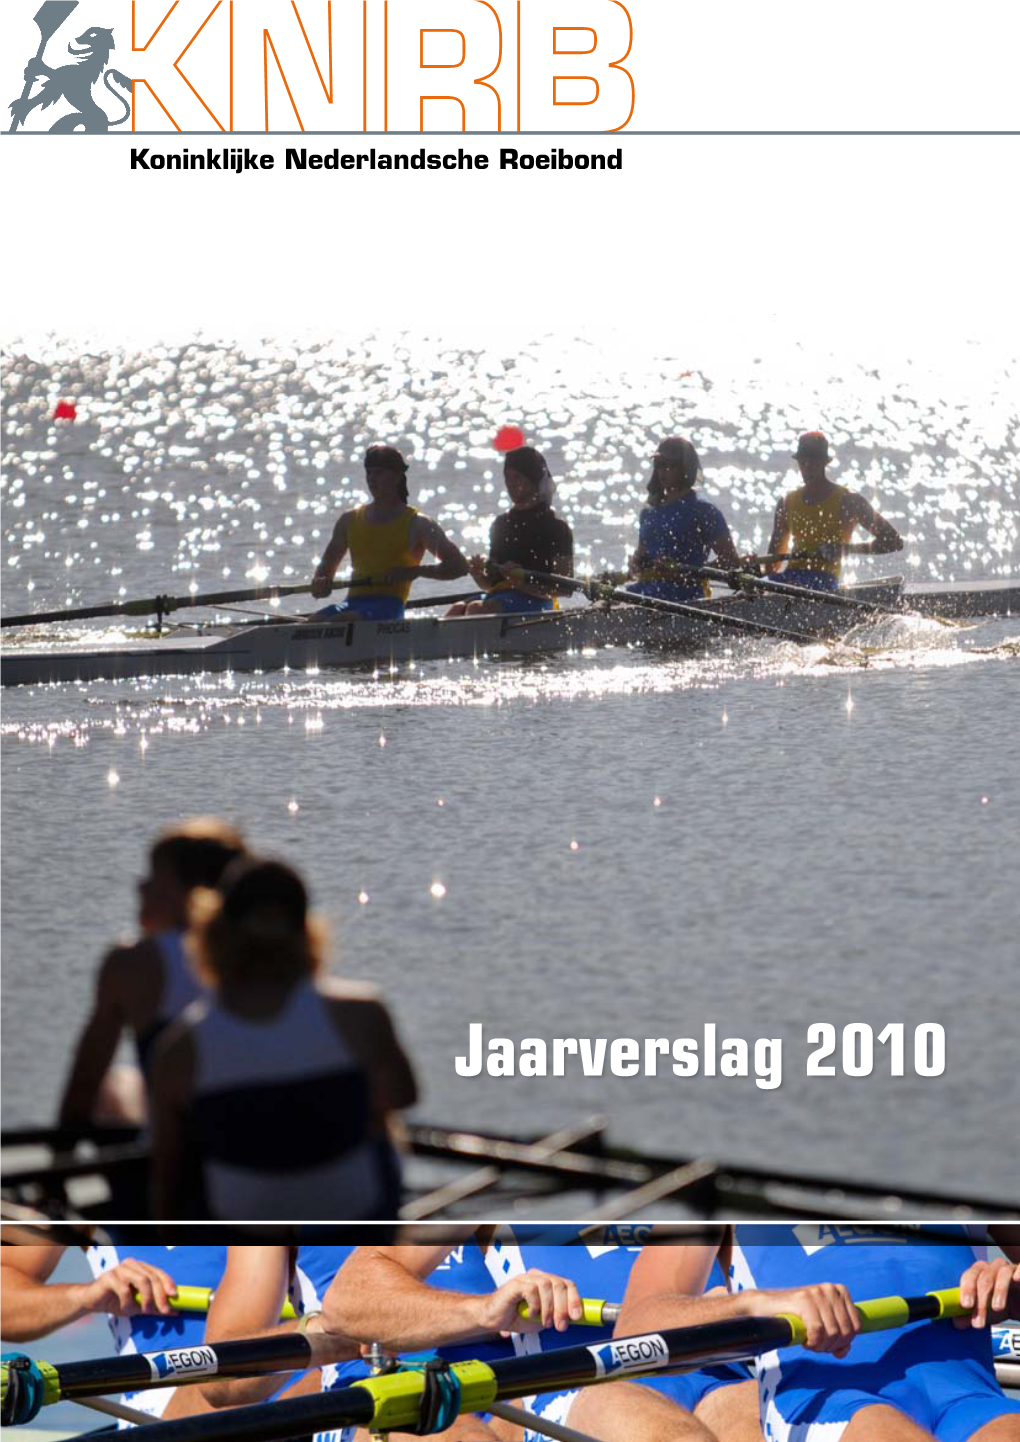 Jaarverslag 2010 Van De Koninklijke Nederlandsche Roeibond